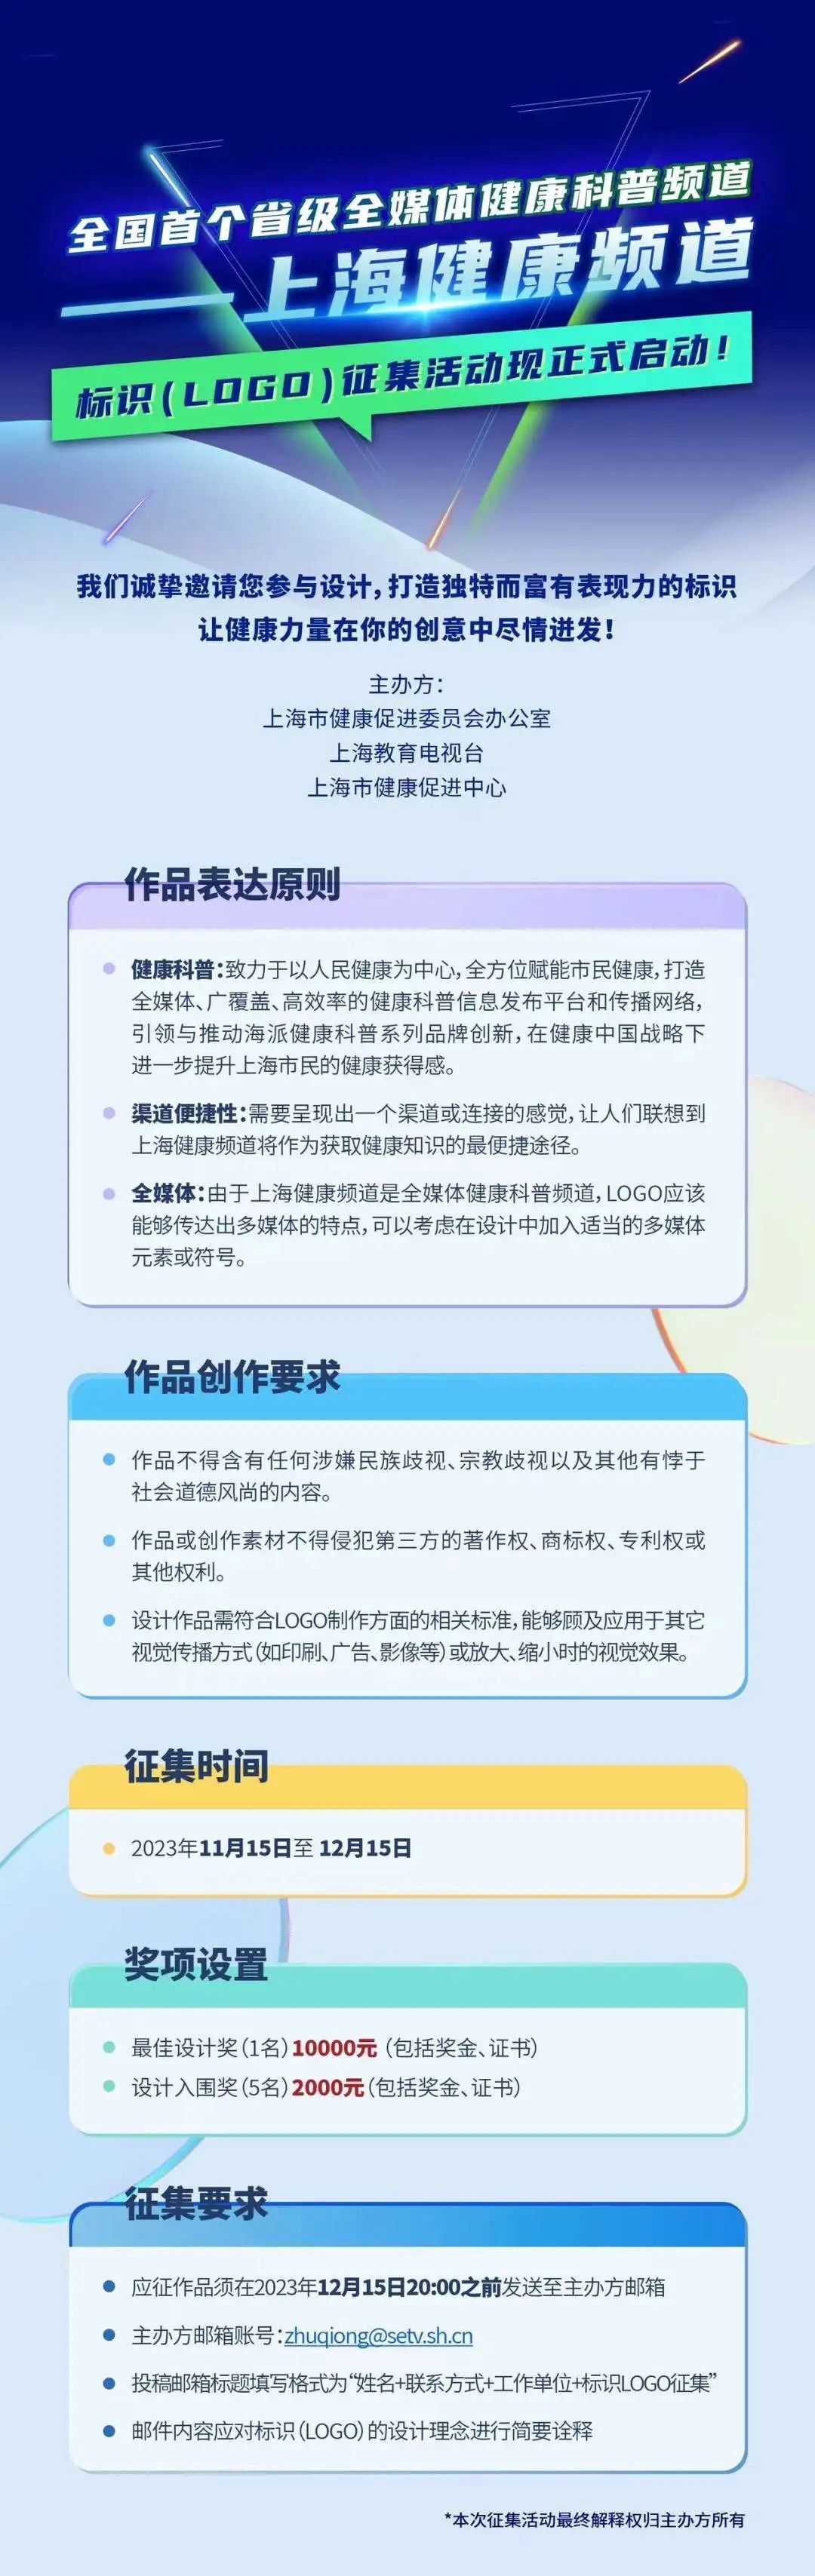 上海健康频道向全社会公开有奖征集LOGO